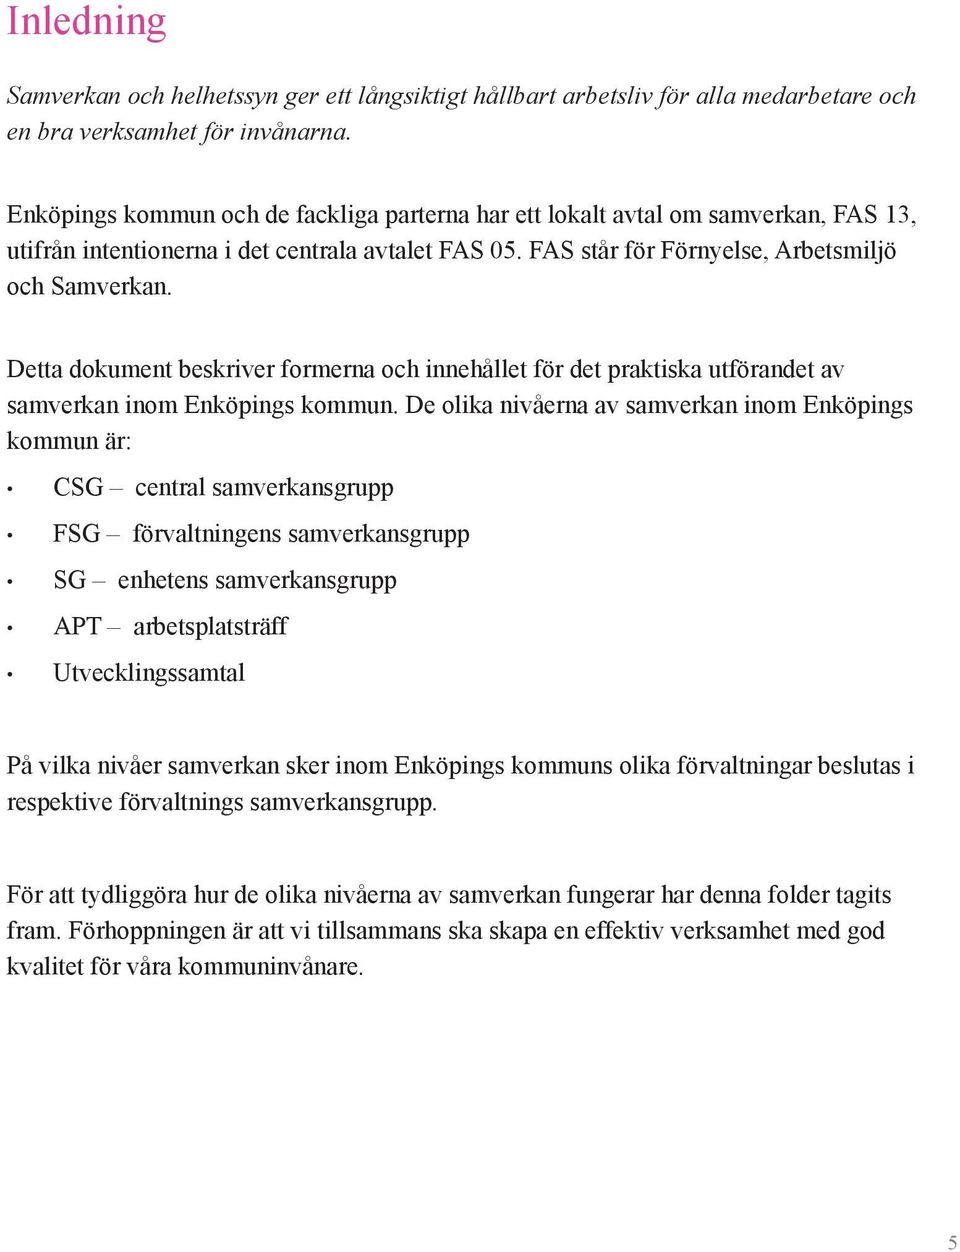 Detta dokument beskriver formerna och innehållet för det praktiska utförandet av samverkan inom Enköpings kommun.